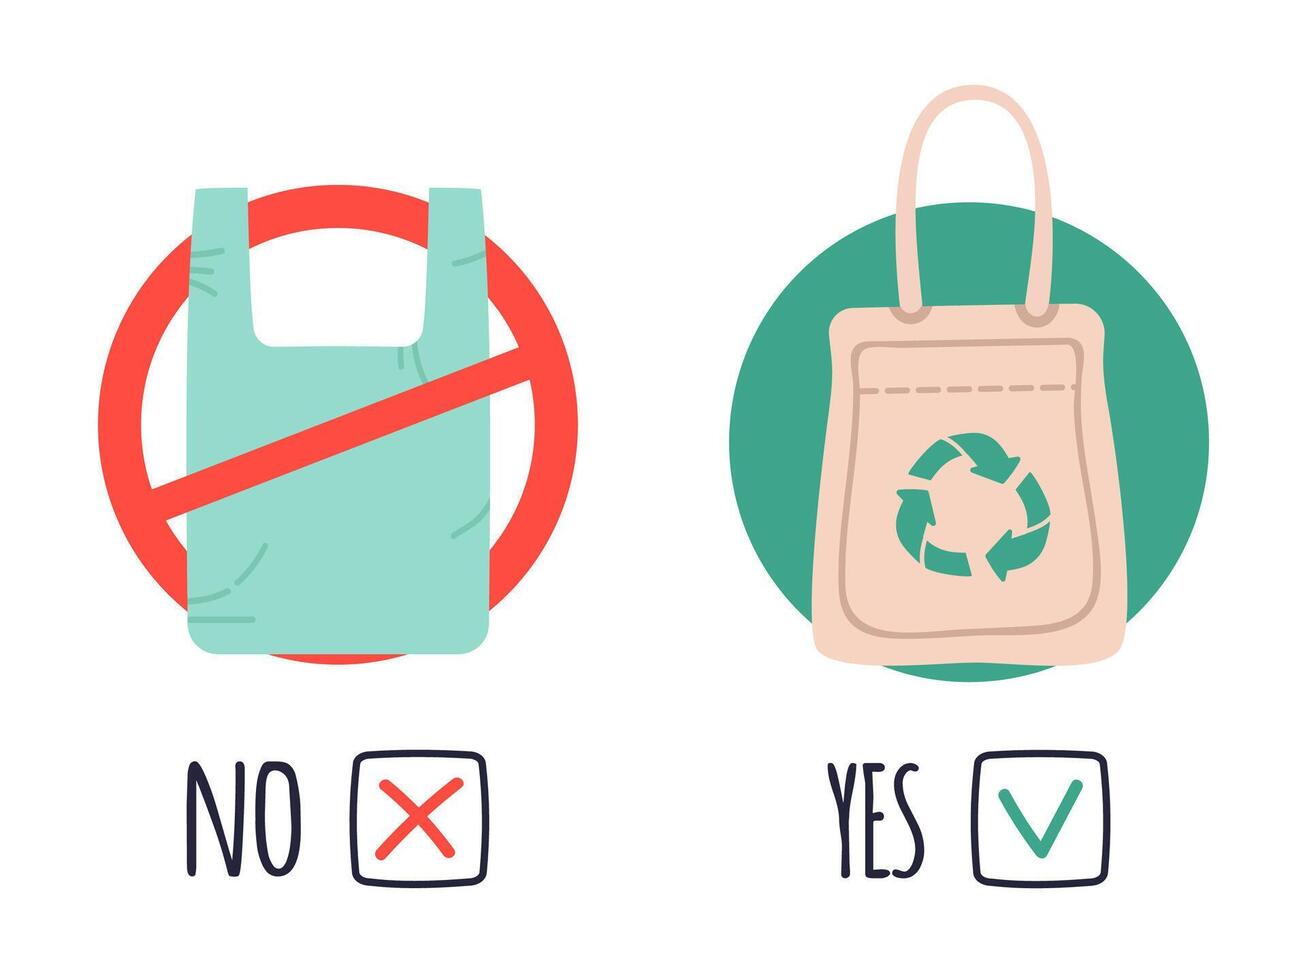 Plastik und Öko Taschen. Verschmutzung Polyethylen Problem, sagen Nein zu Plastik Taschen, halt mit Cellophan Tasche. Nein Plastik Konzept Vektor Abbildungen